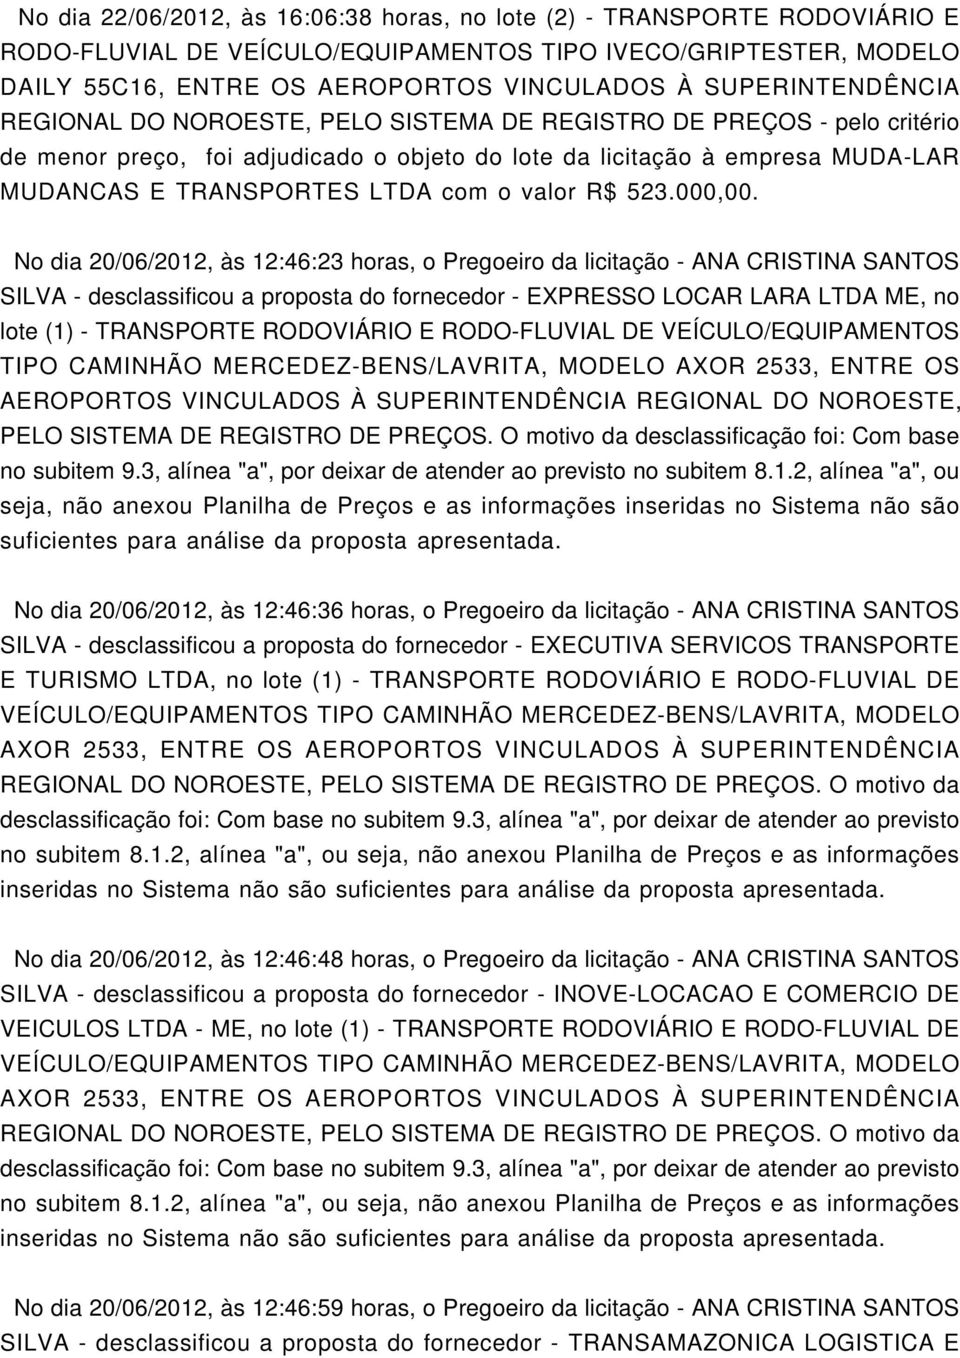 No dia 20/06/2012, às 12:46:23 horas, o Pregoeiro da licitação - ANA CRISTINA SANTOS SILVA - desclassificou a proposta do fornecedor - EXPRESSO LOCAR LARA LTDA, no lote (1) - TRANSPORTE RODOVIÁRIO E